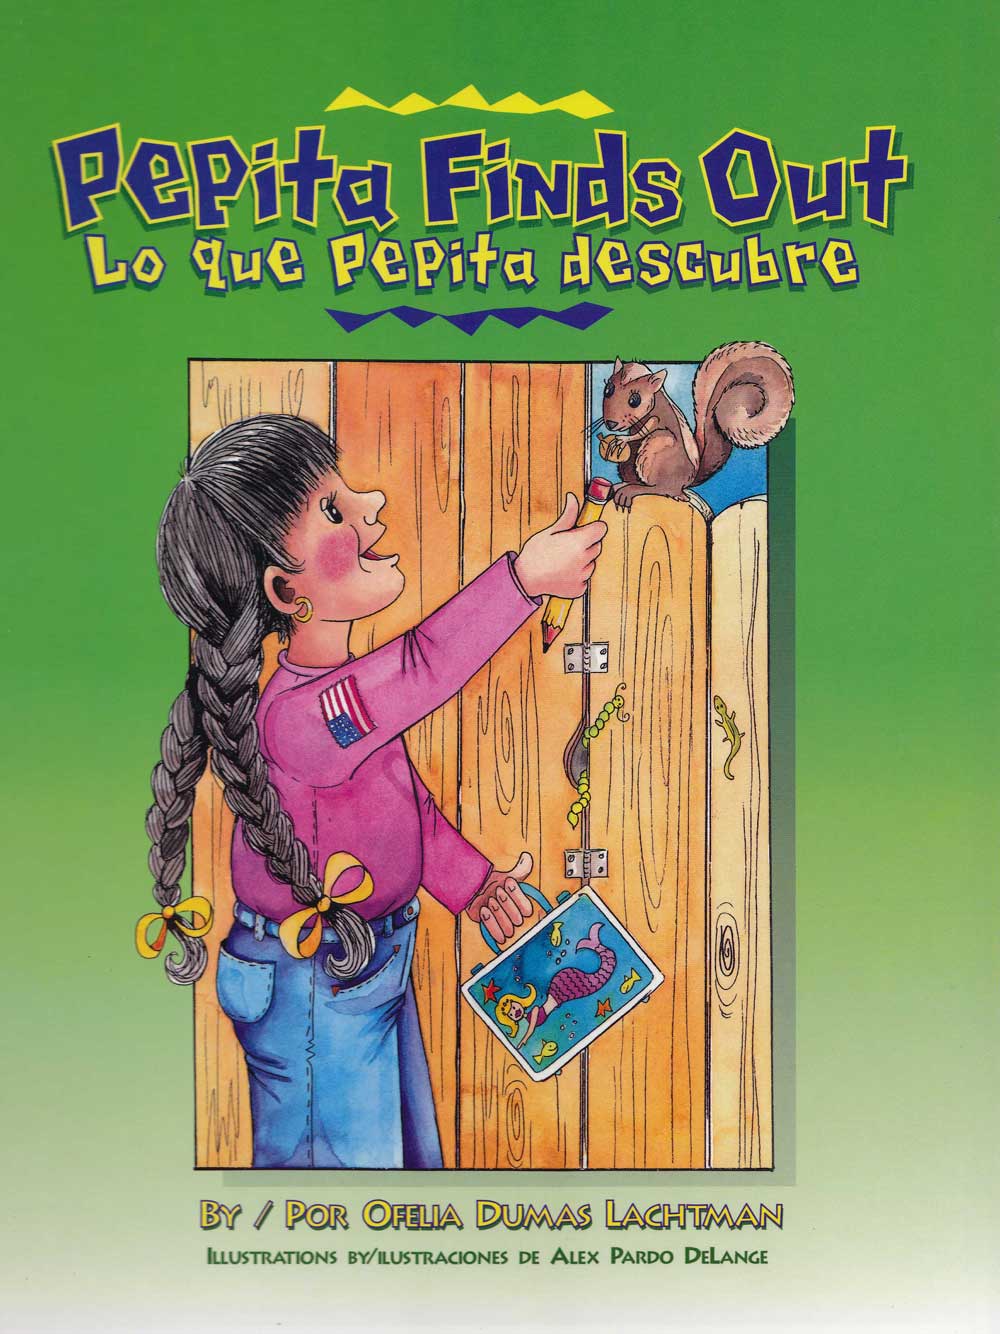 Lo que Pepita descubre - Pepita Finds Out, Del Sol Books